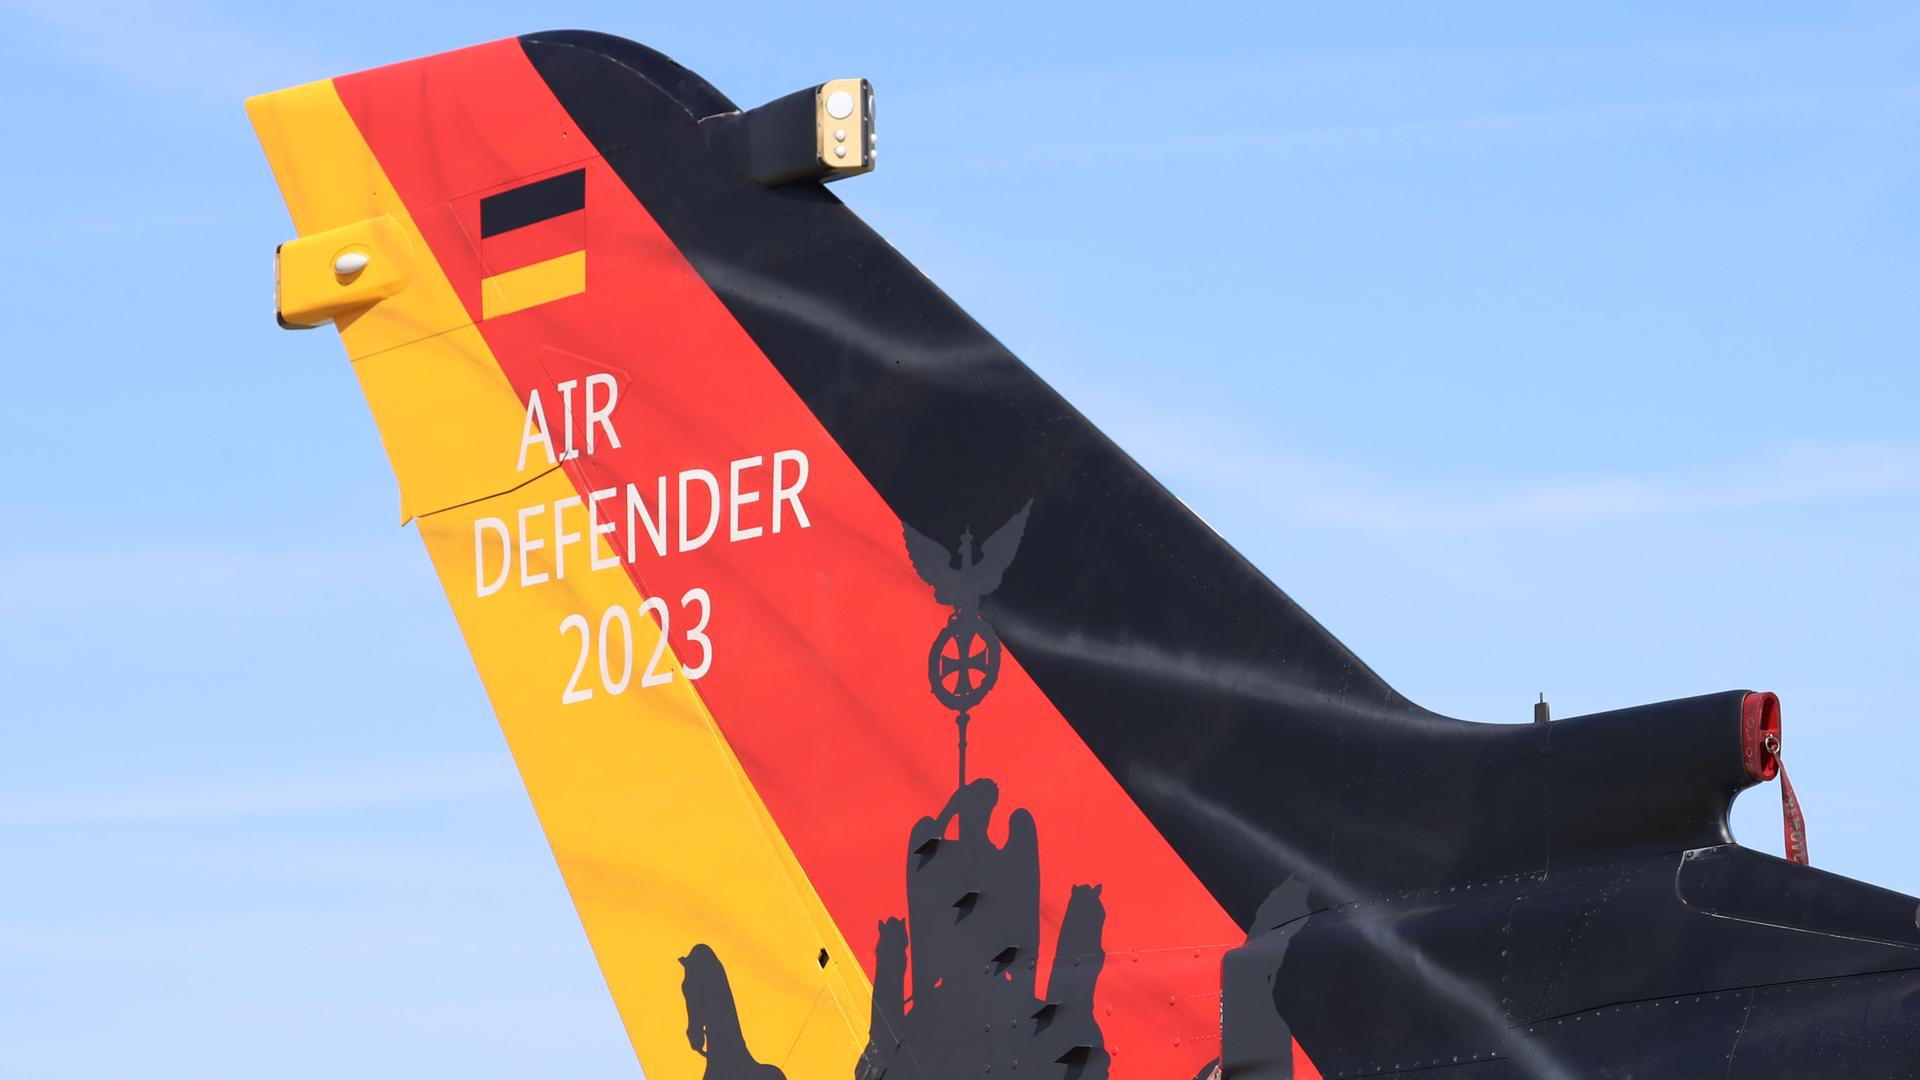 Das Heck eines Tornado-Flugzeugs ist in Schwarz-Rot-Gold lackiert und trägt die Aufschrift "Air Defender 2023".